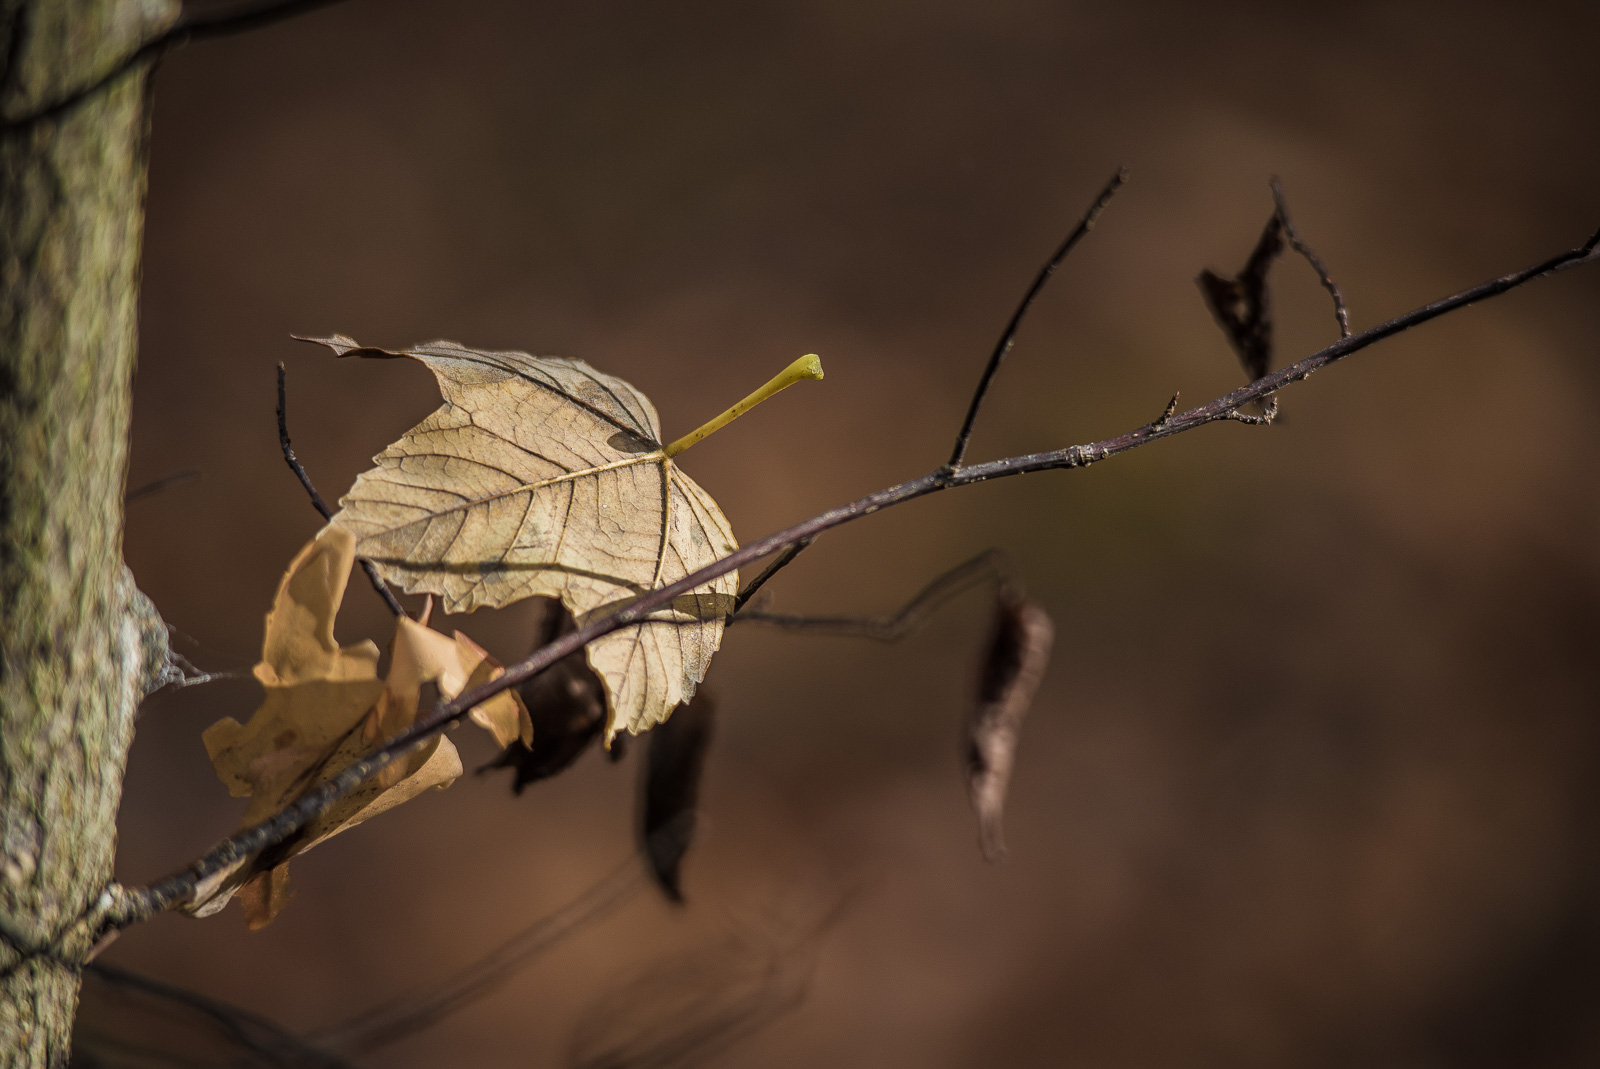 Ein trockenes Blatt liegt auf einer AstGabel und auf mehreren anderen Blättern. Ein SonnenStrahl beleuchtet es prägnant vor warm-braunem Hintergrund